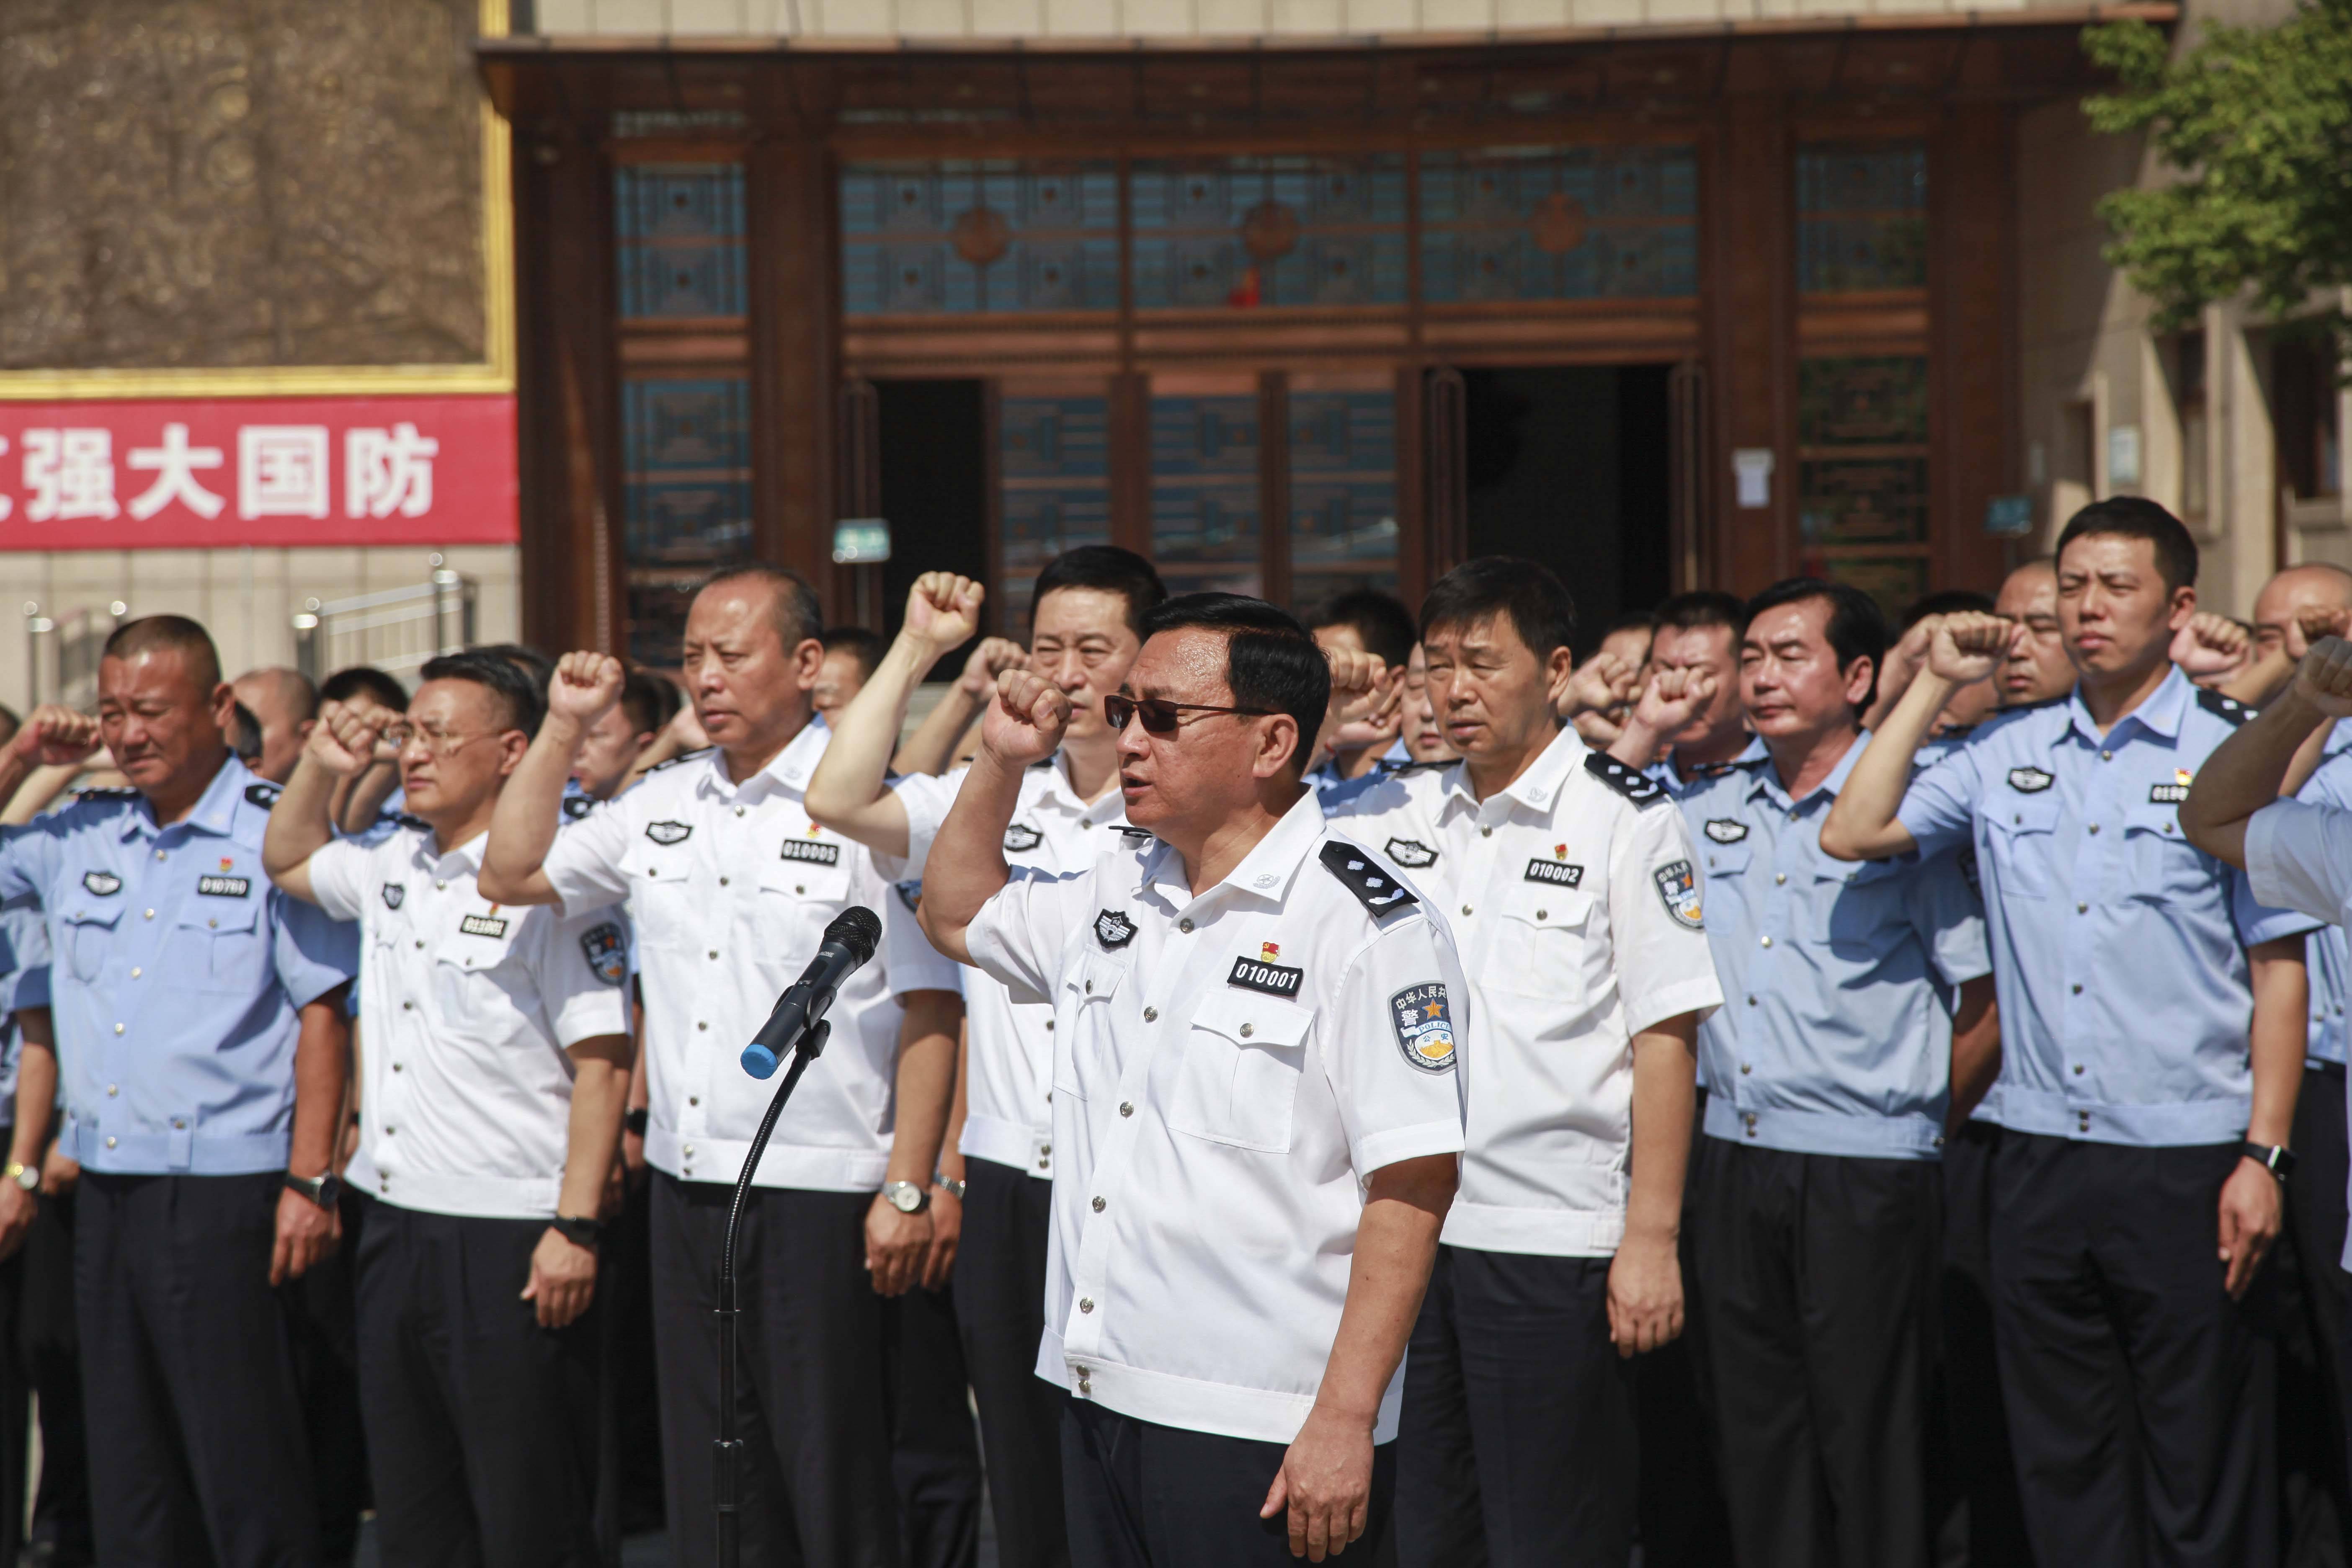 由北京铁路公安局党委书记,局长王旭章领誓,重温了入党誓词